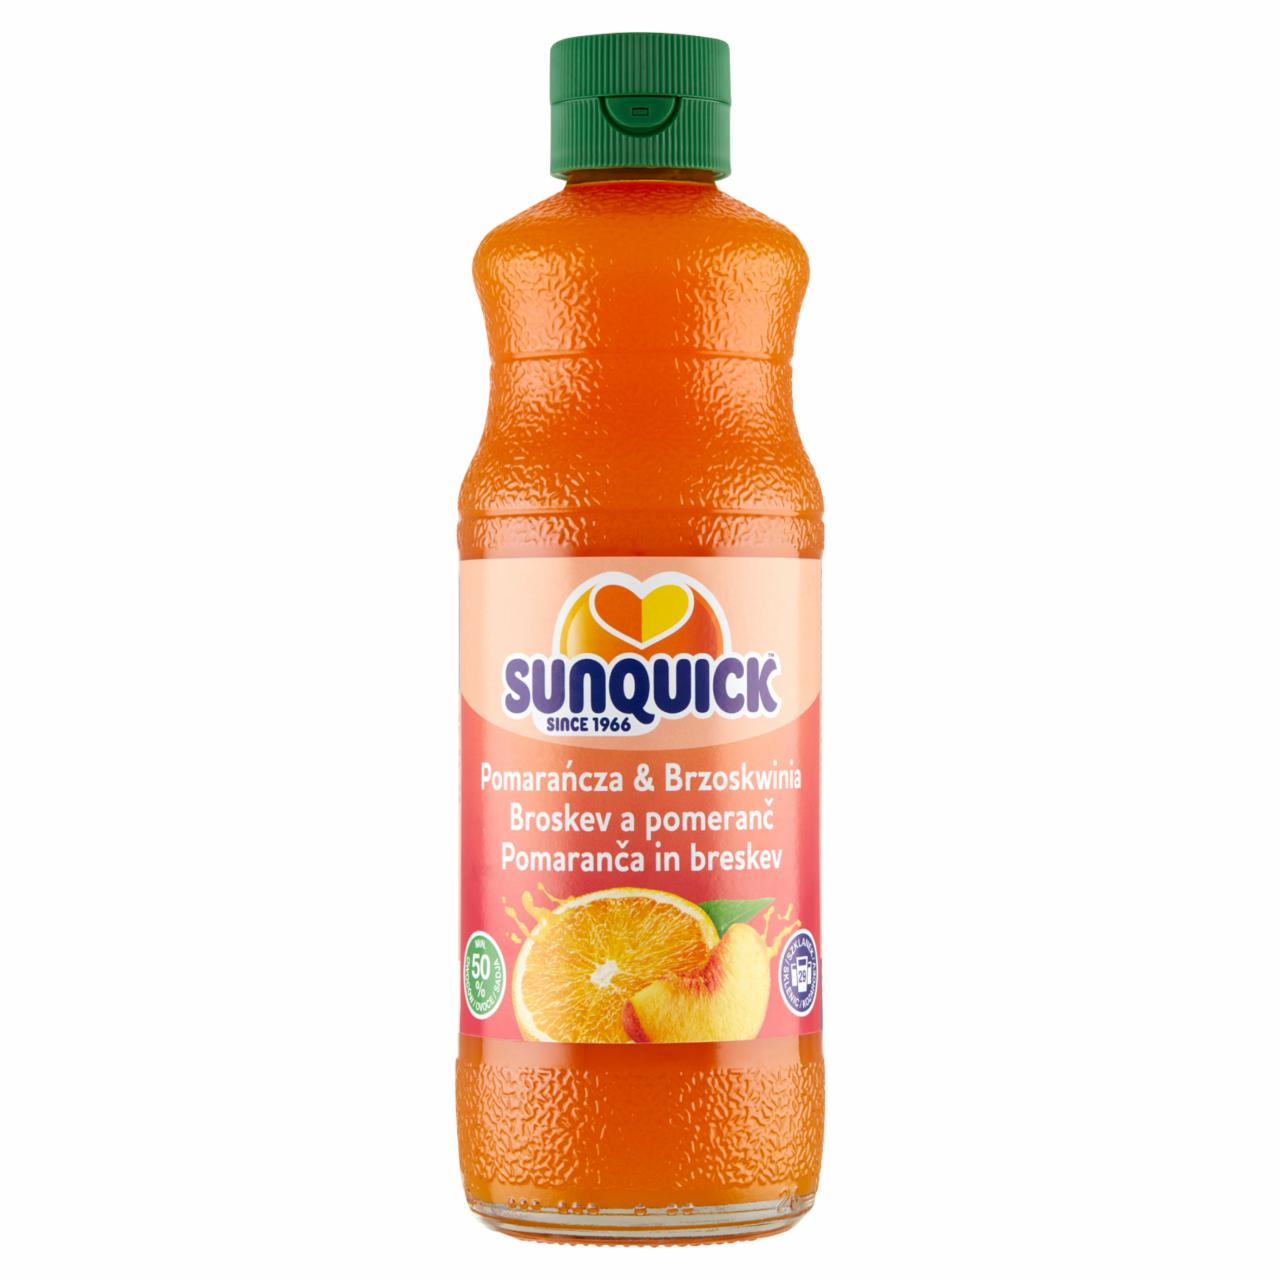 Zdjęcia - Sunquick Koncentrat napoju pomarańcza & brzoskwinia 580 ml